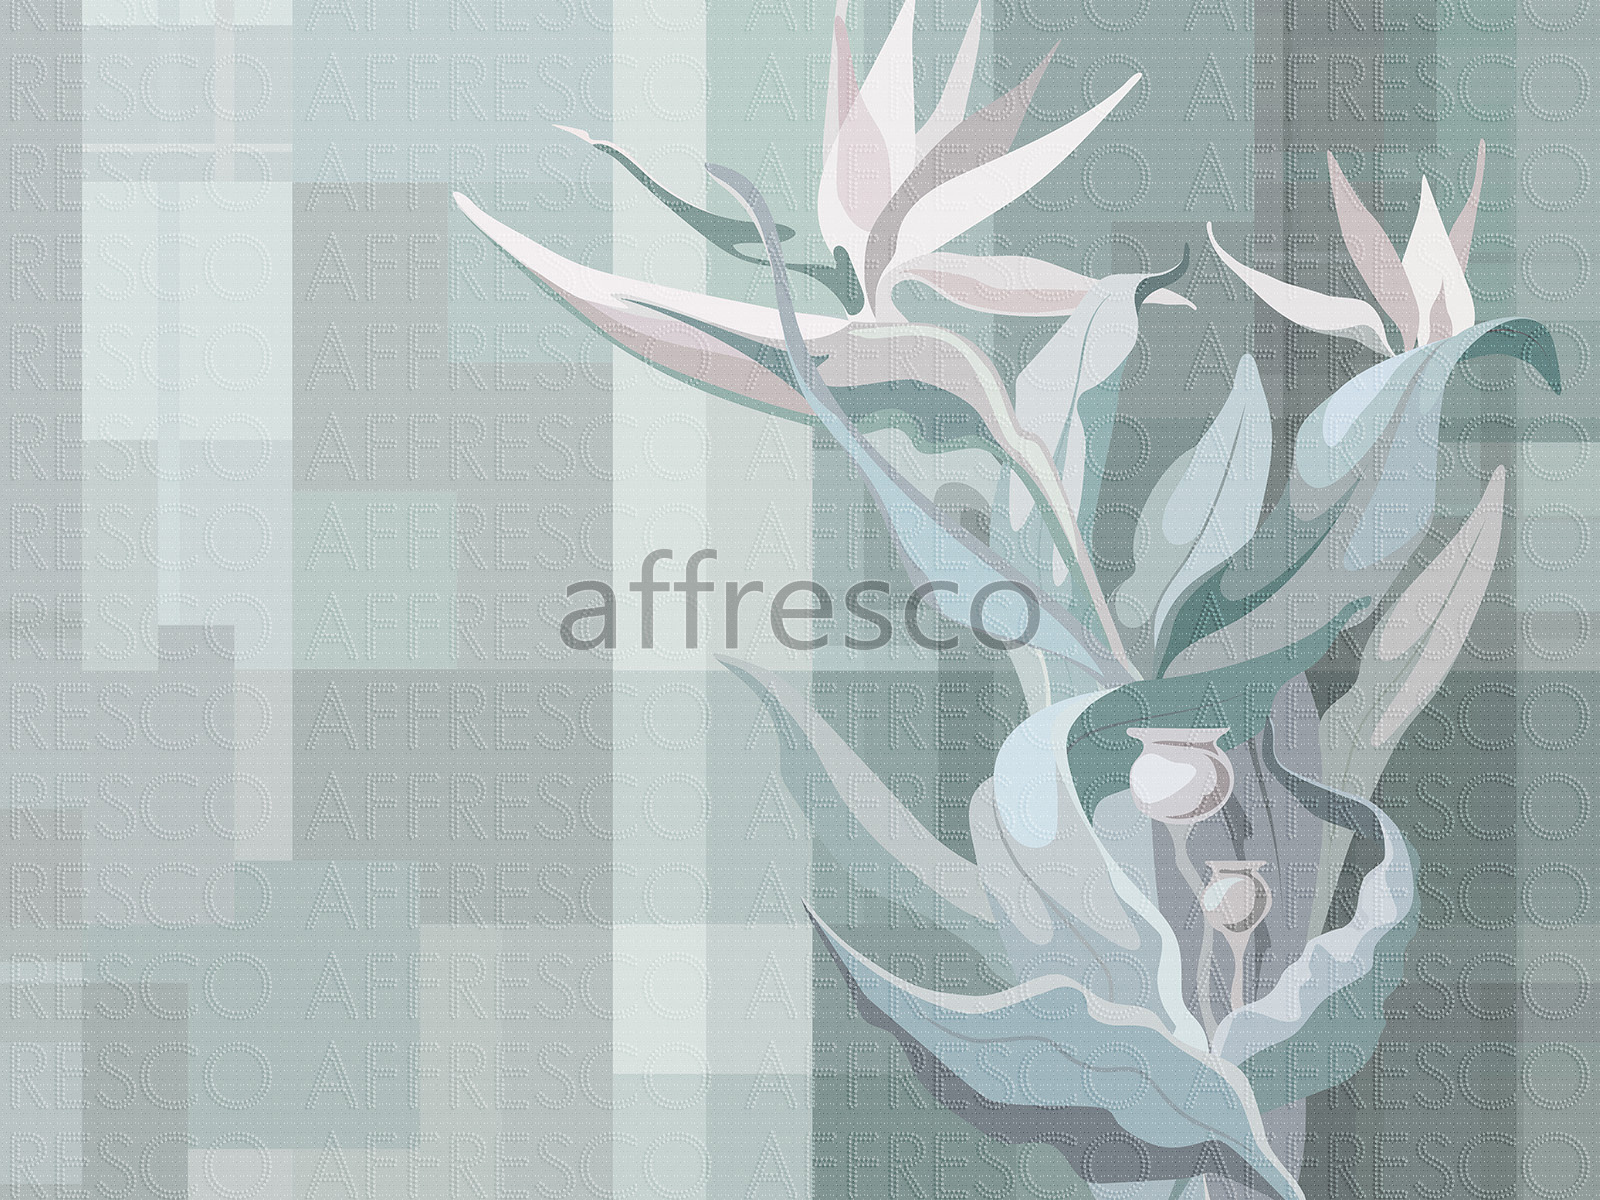 AF2200-COL3 | Fantasy | Affresco Factory